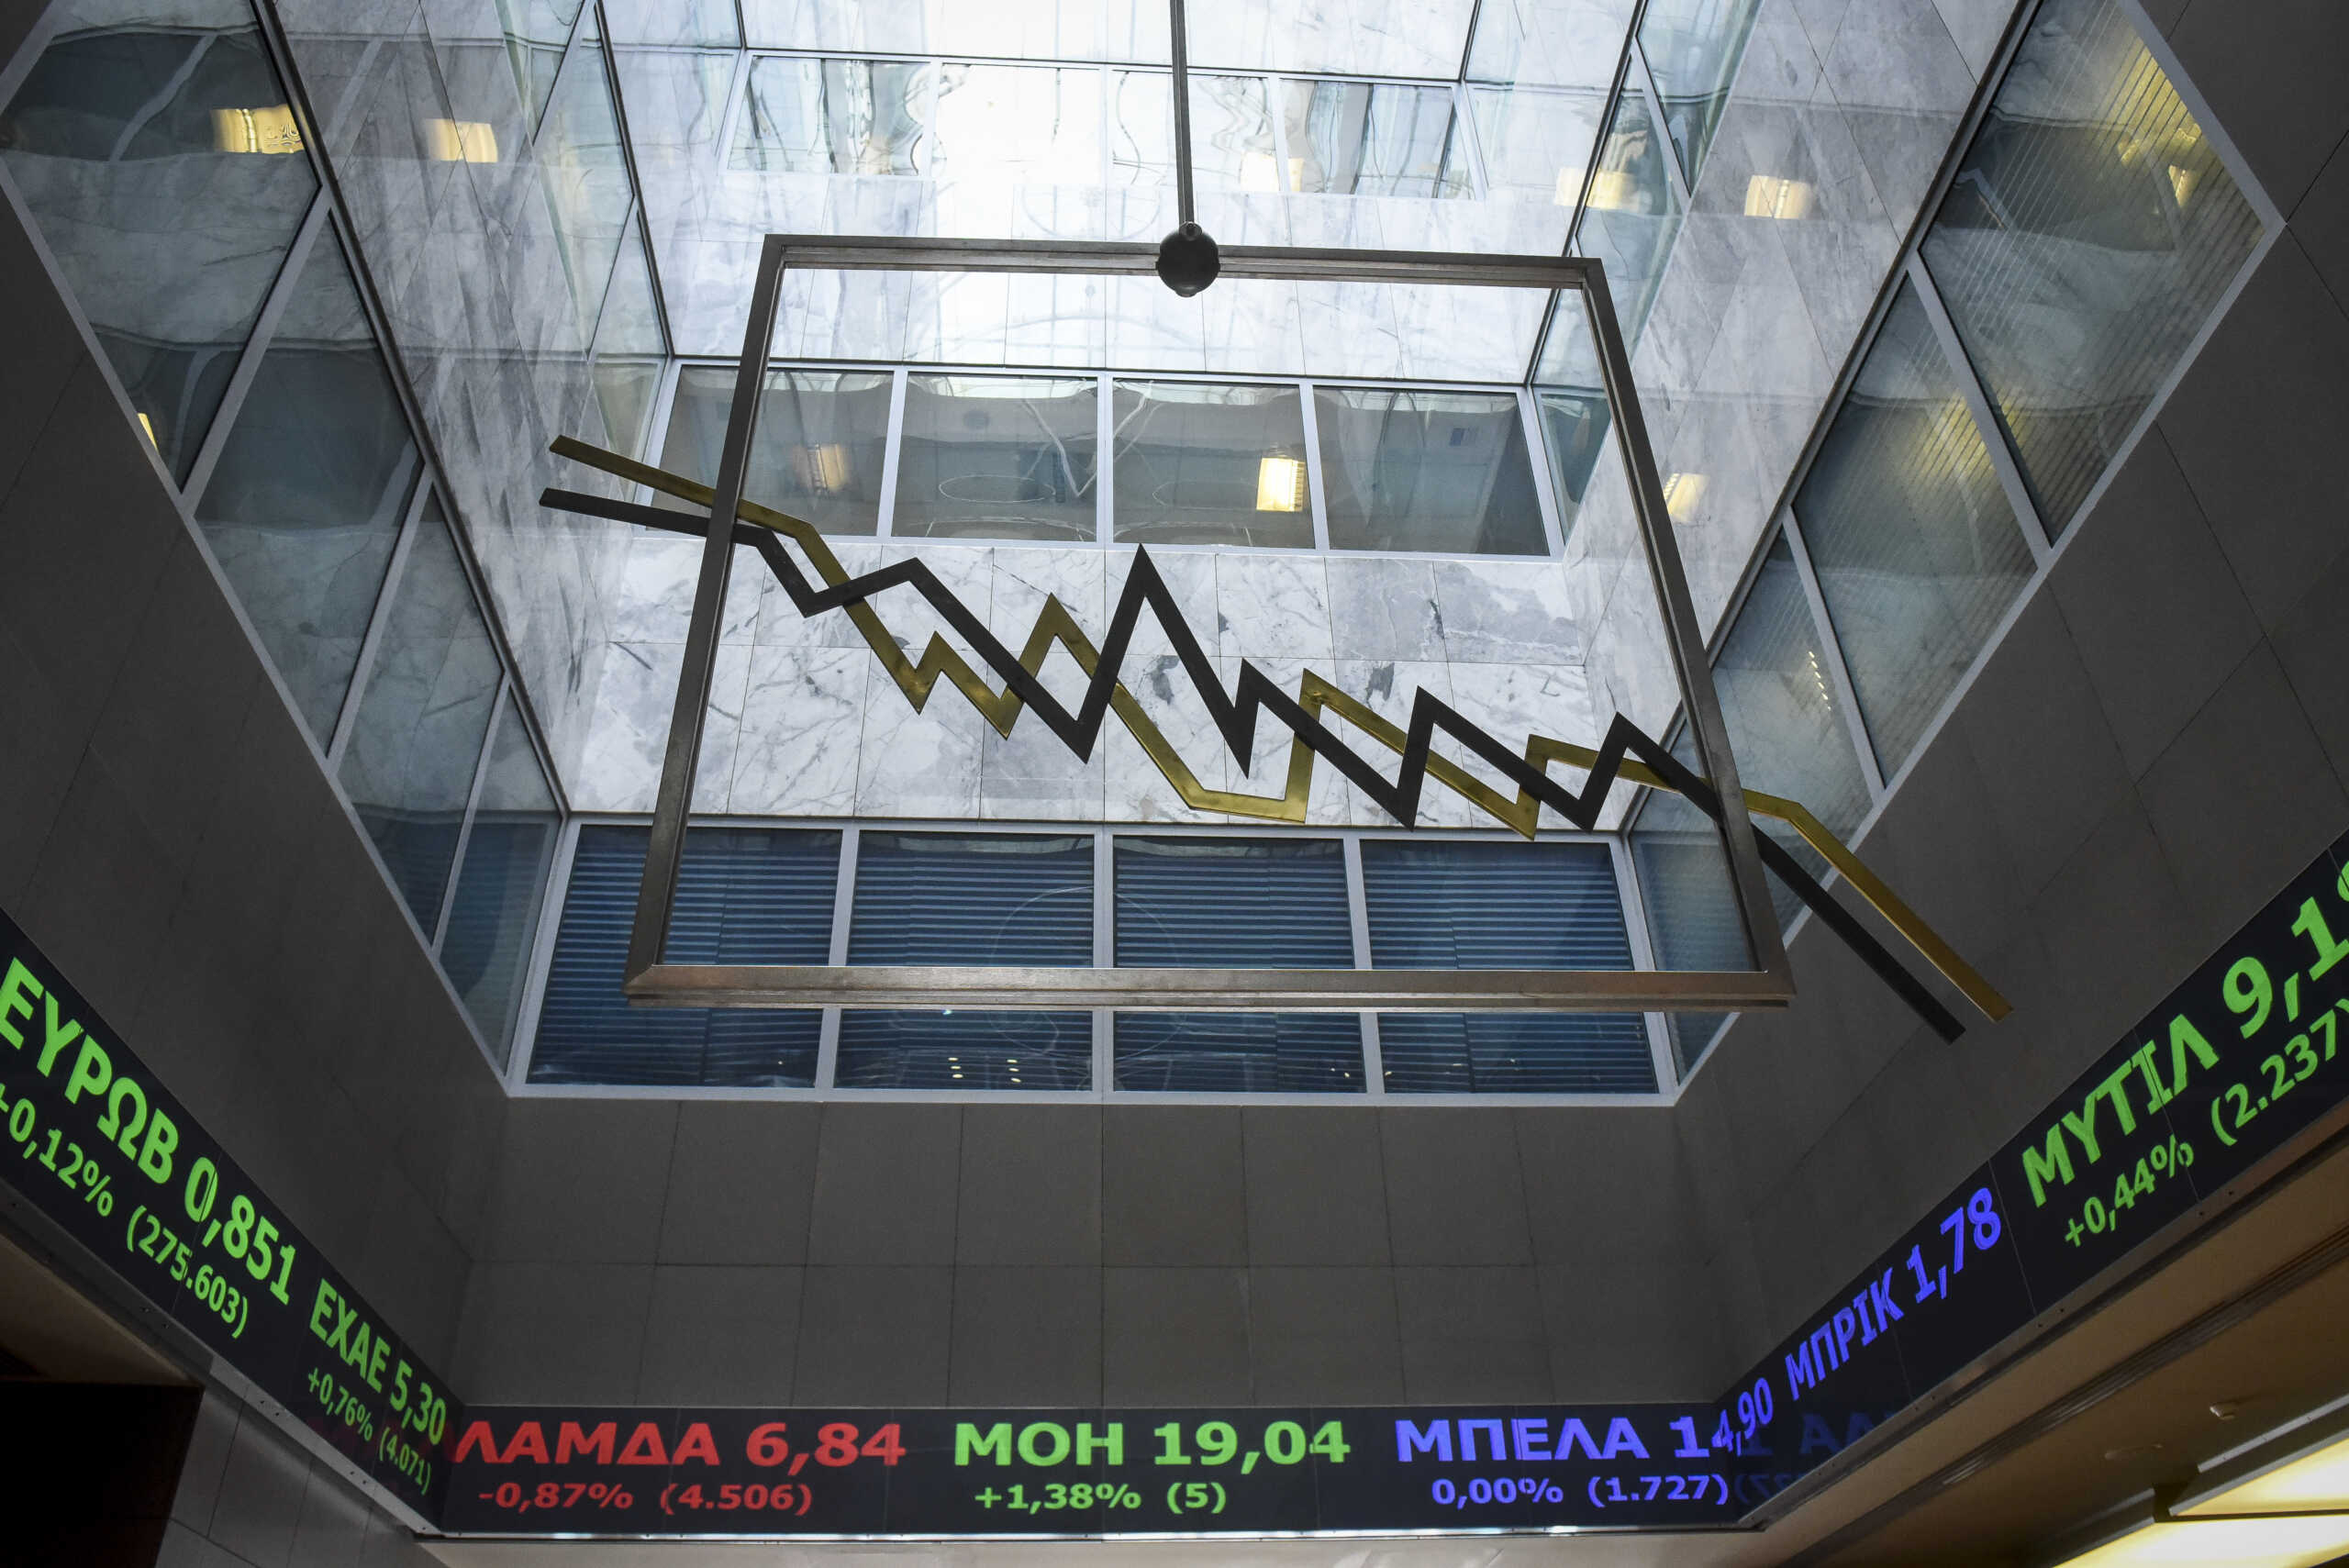 Χρηματιστήριο Αθηνών: Άνοδος 0,11% για τον Γενικό Δείκτη, στα 123,61 εκατ. ευρώ ο τζίρος